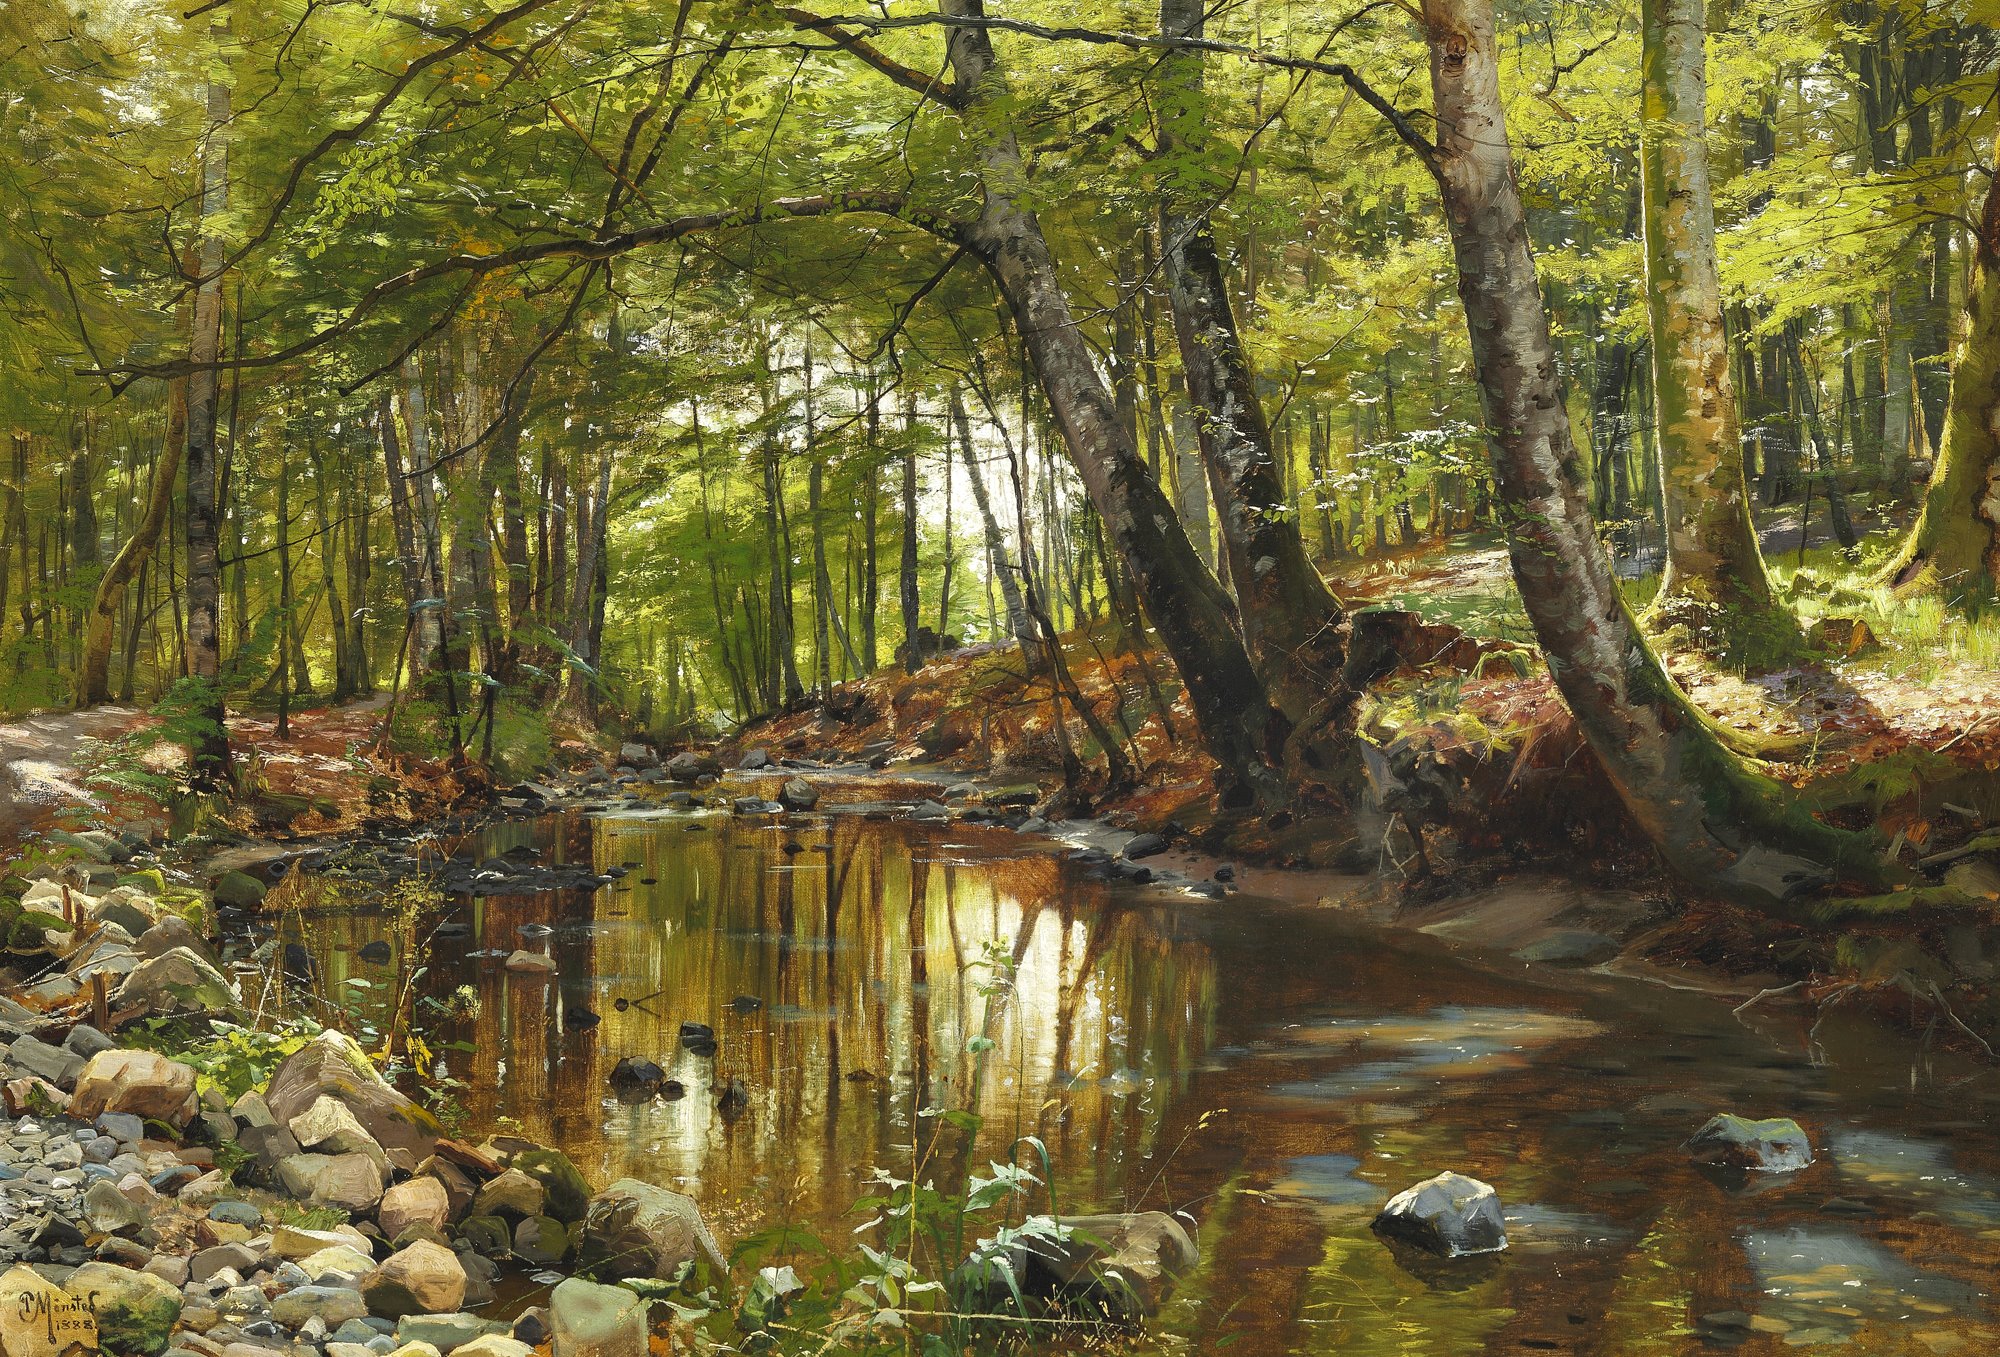 ‘A Spring Day in a Forest Stream’ by Peder Mørk Mønsted, 1888